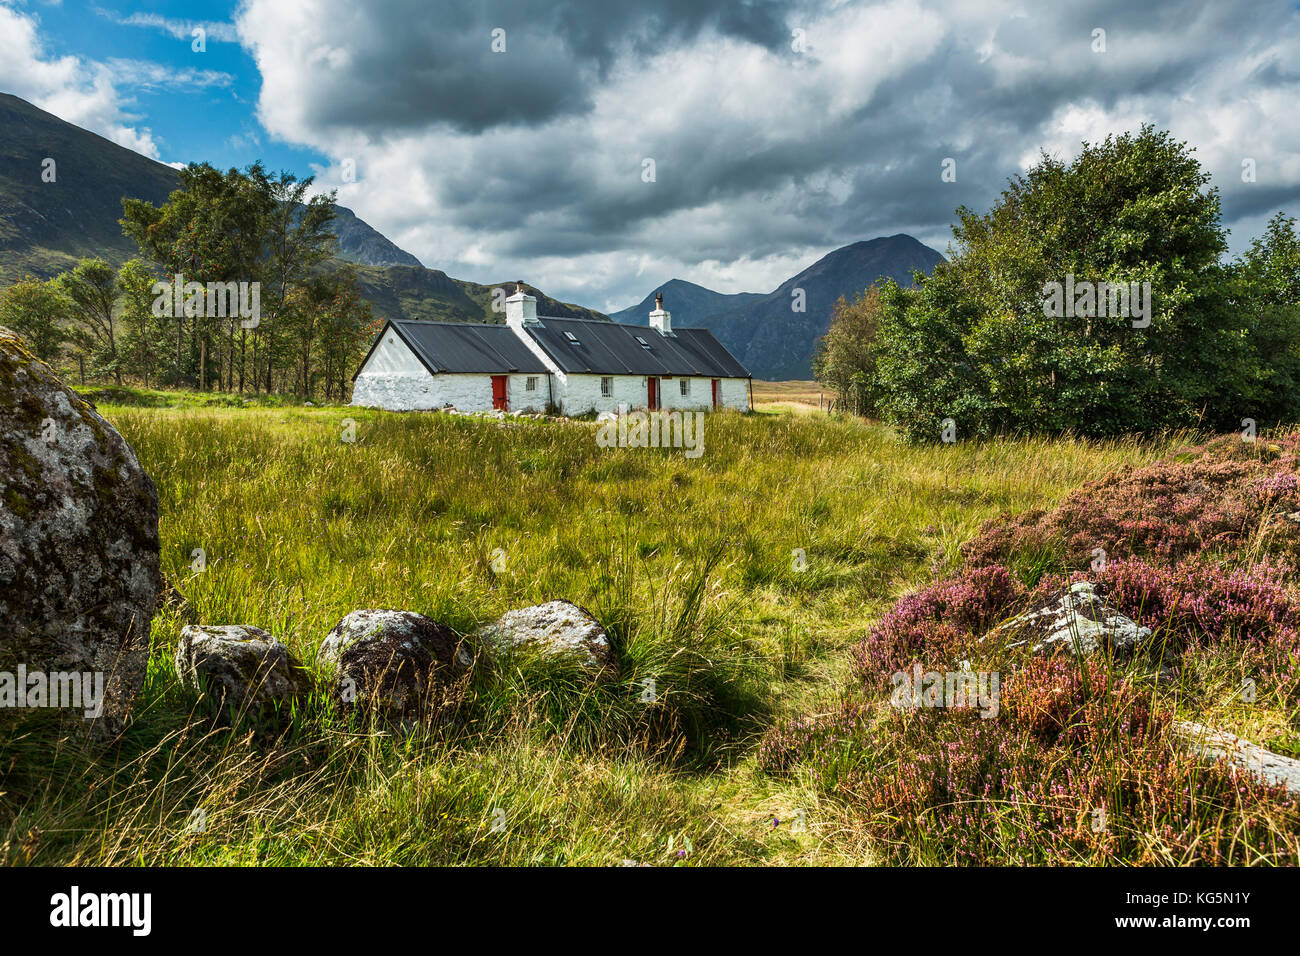 Blackrock Cottage and Buachaille Etive Mor, Glencoe, Scotland. Stock Photo